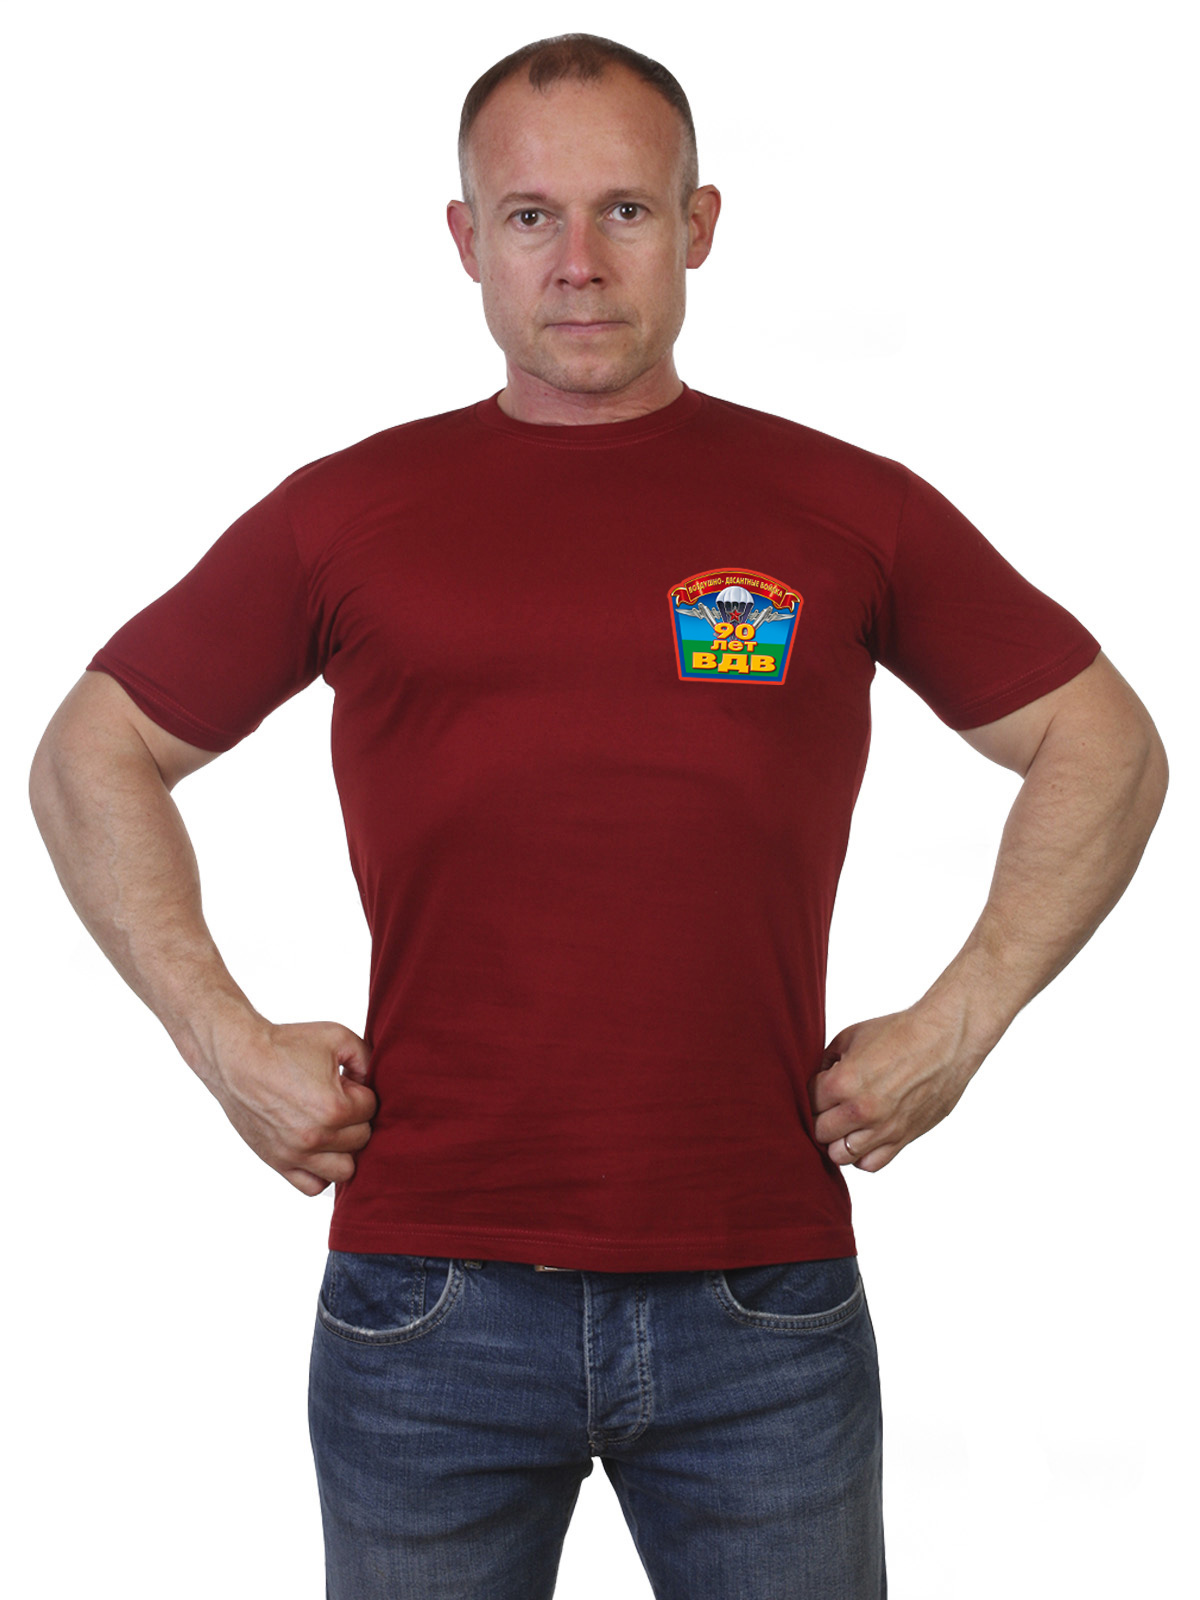 Мужская футболка «90 лет Воздушно-десантным войскам» 